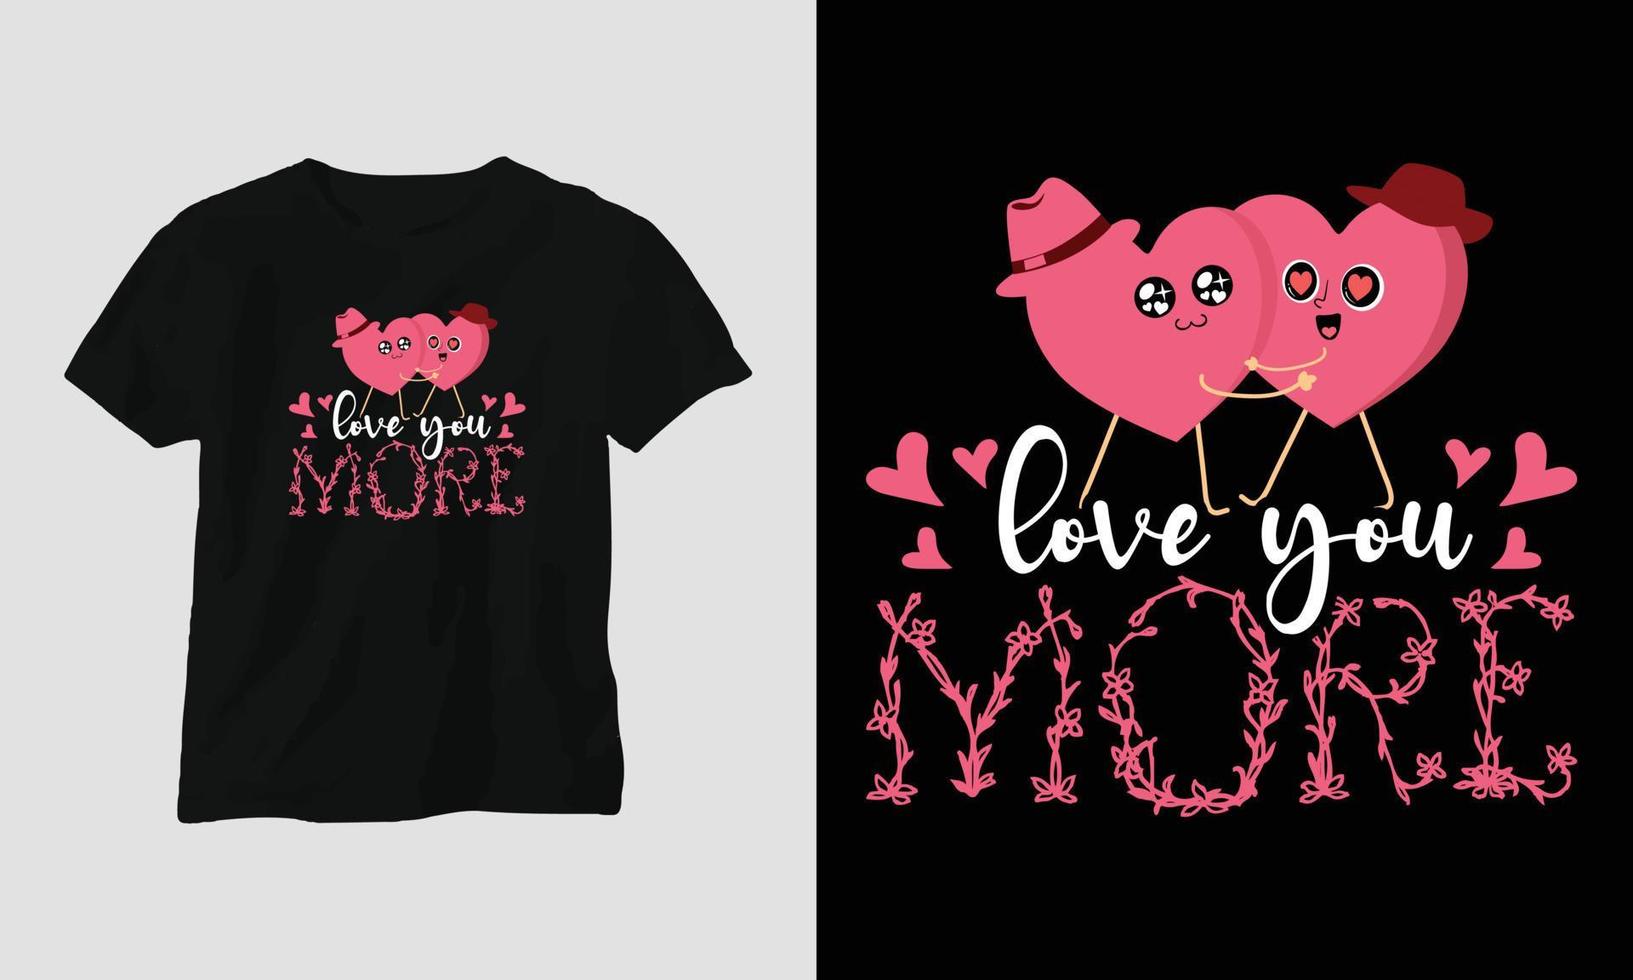 Ich liebe dich mehr - Valentinstag Typografie T-Shirt Design mit Herz, Pfeil, Kuss und motivierenden Zitaten vektor